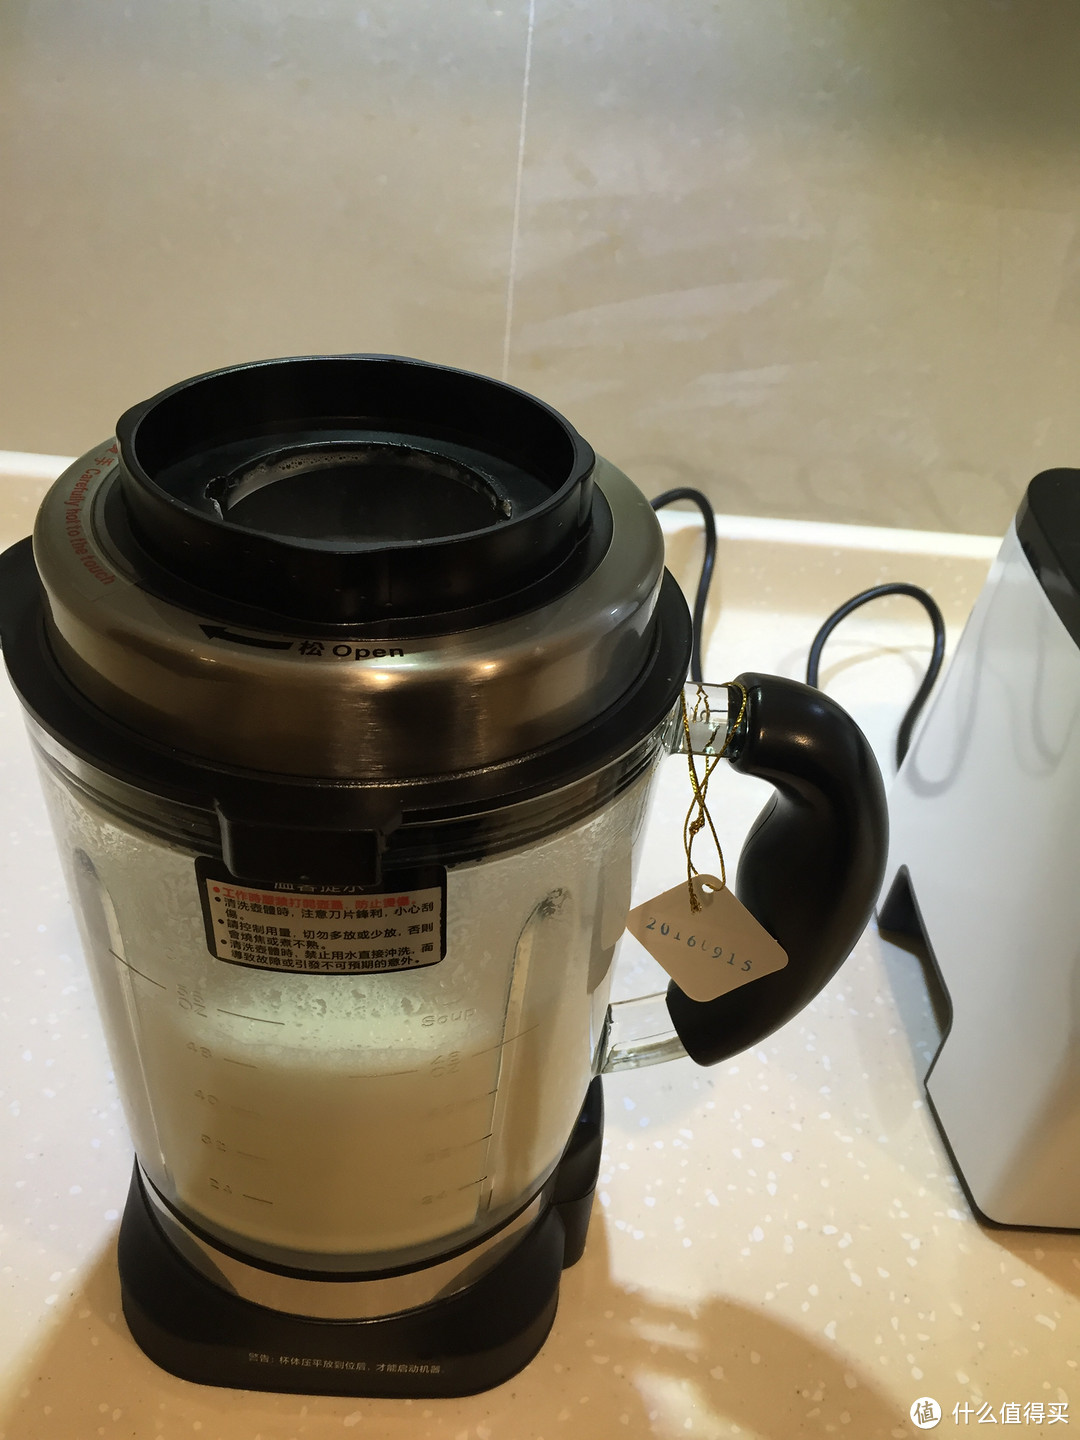 一杯新鲜出炉的原味豆浆， 来自ASPPUER 欧索普尔 全自动加热玻璃杯破壁料理机